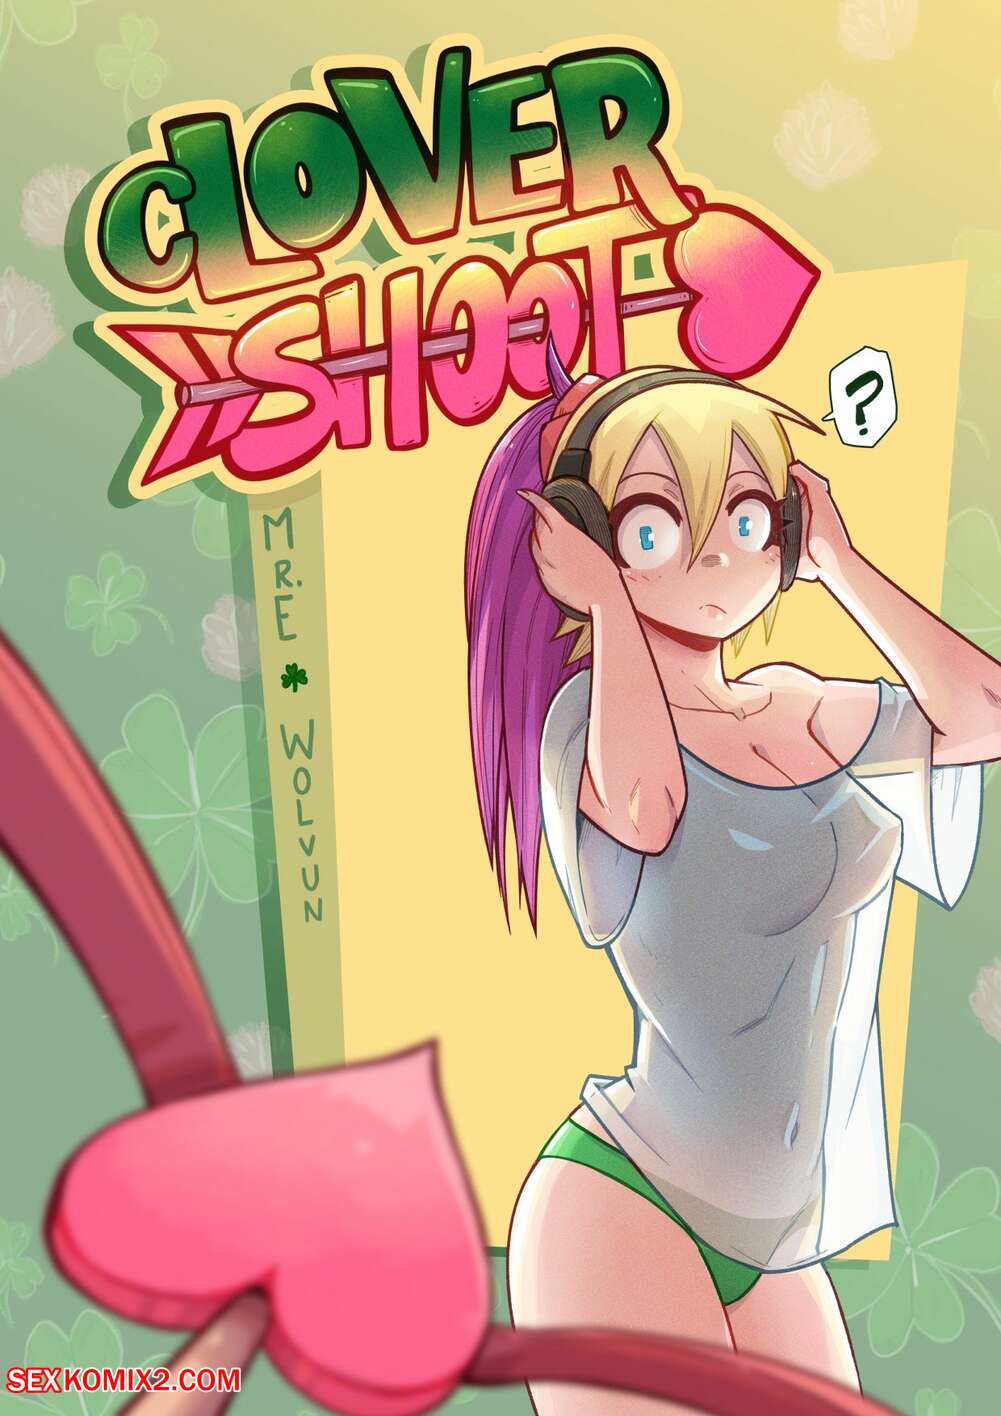 Wwwxne - âœ…ï¸ Porn comic Clover Shoot. Chapter 2. Mr.E. Sex comic busty blonde was |  Porn comics in English for adults only | sexkomix2.com